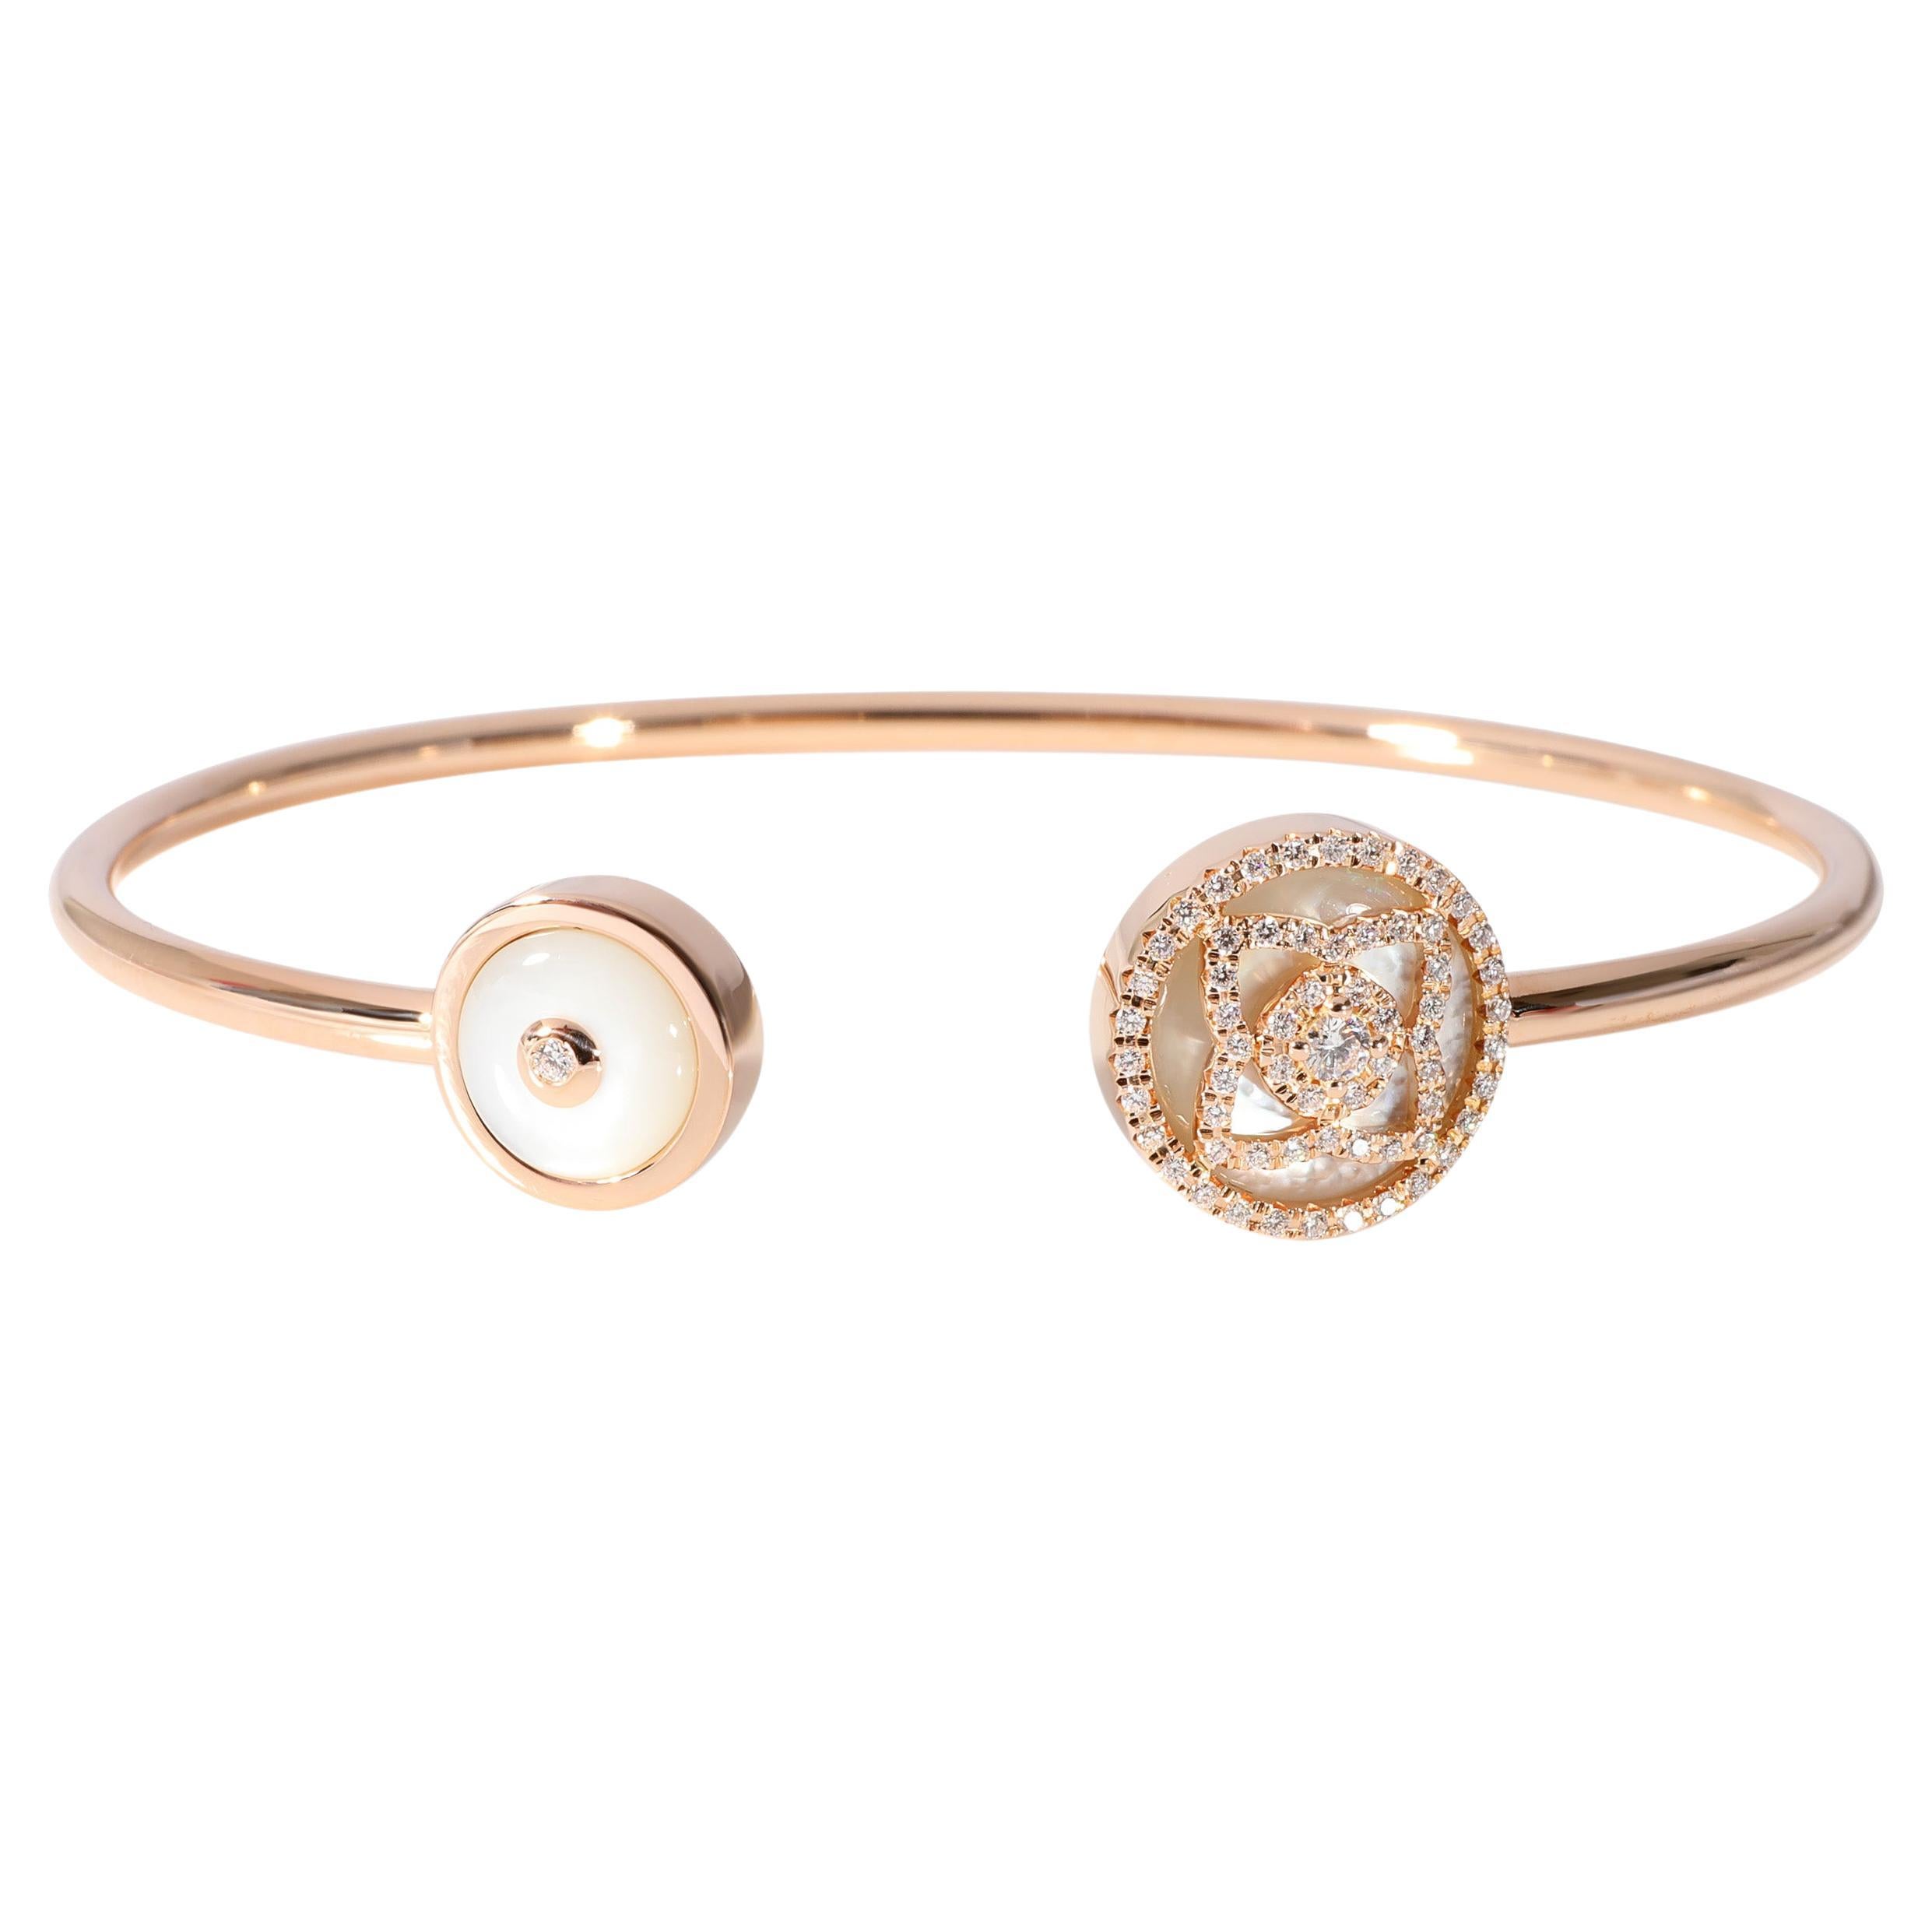 Debeers Enchanted Lotus Diamond Bracelet in 18k Rose Gold 0.2 Ctw